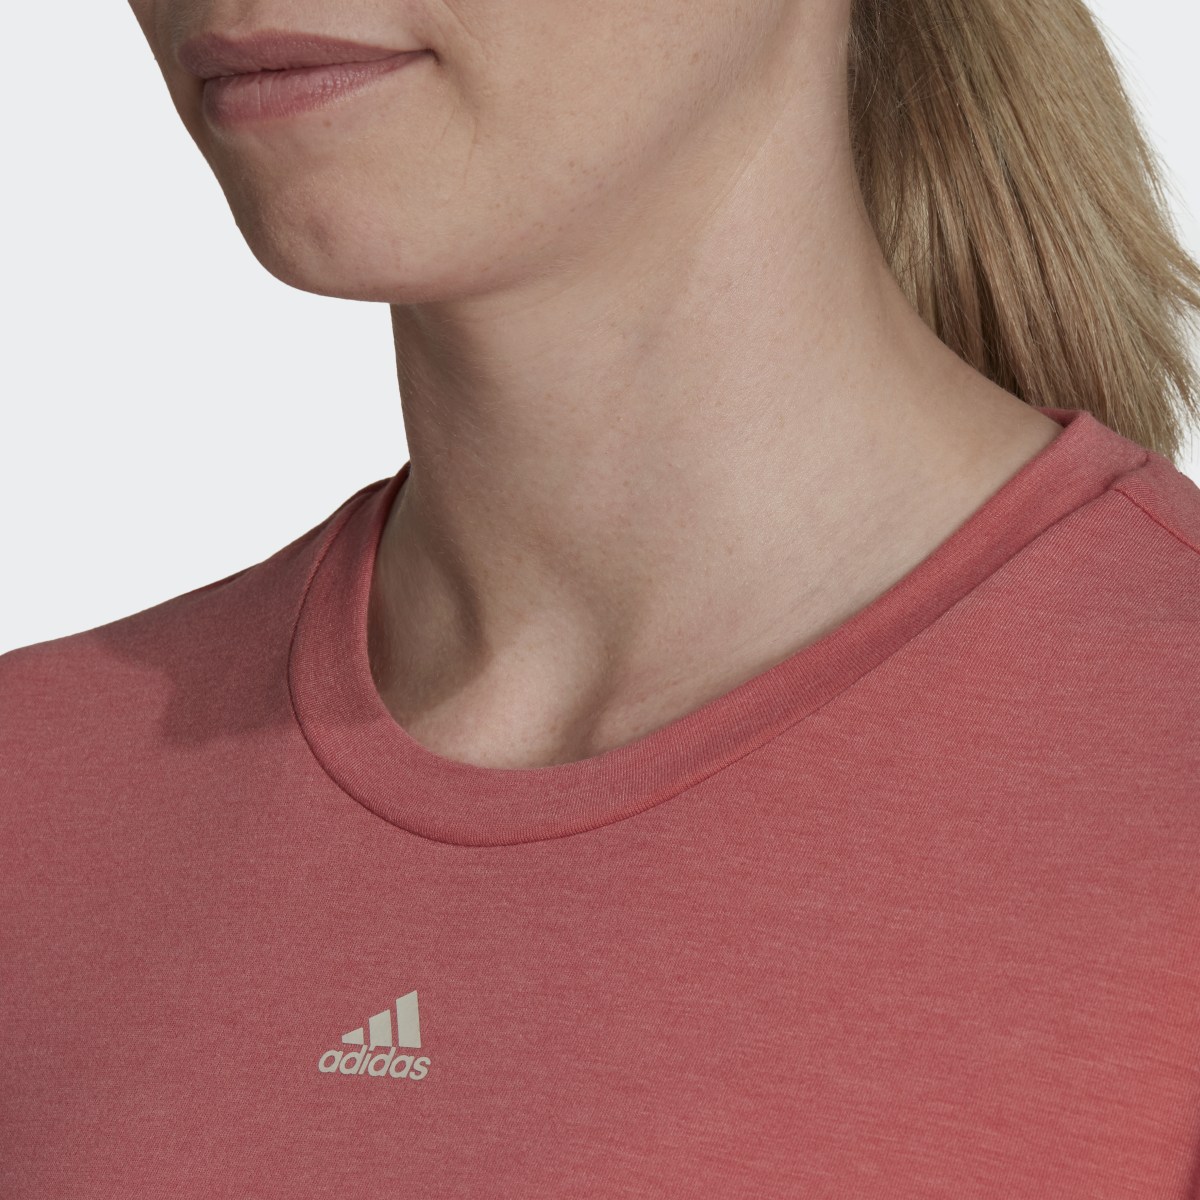 Adidas T-shirt Trainicons 3-Stripes. 6